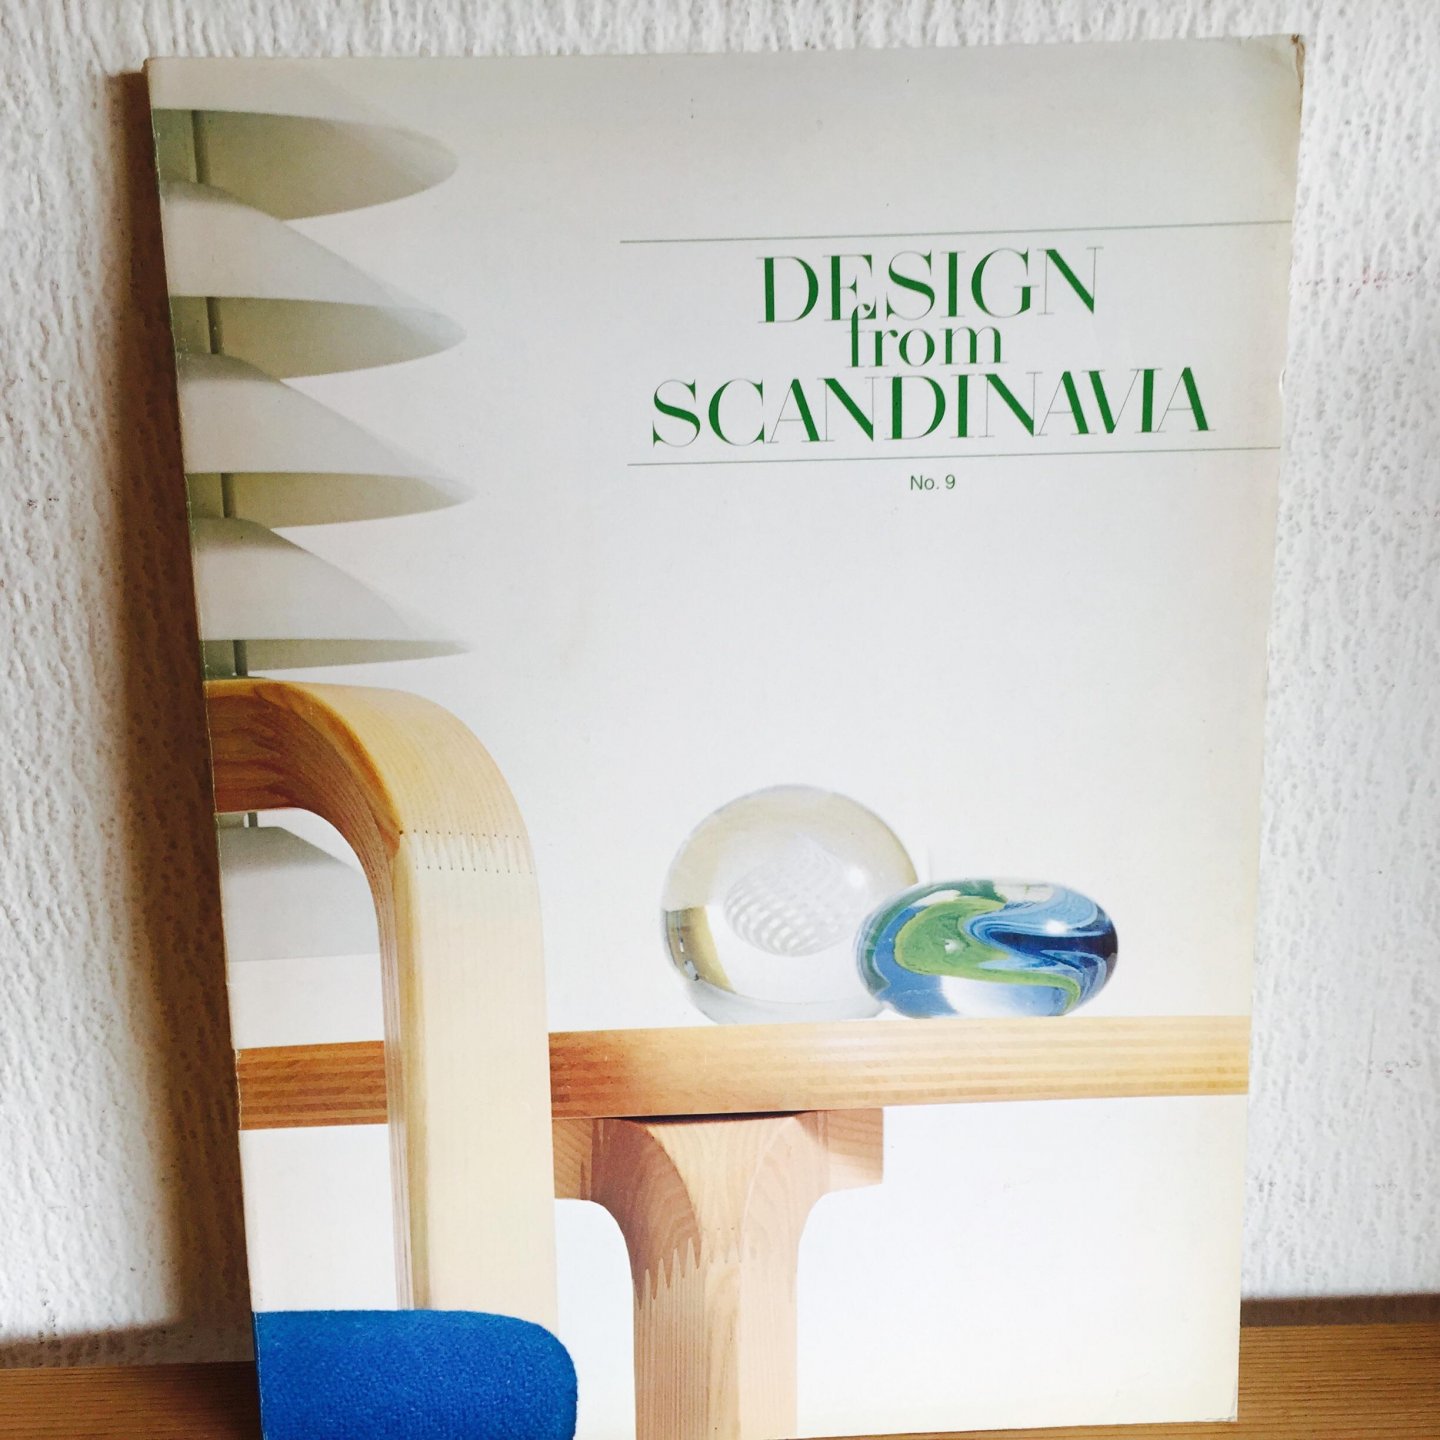  - Design from Scandinavia no. 9